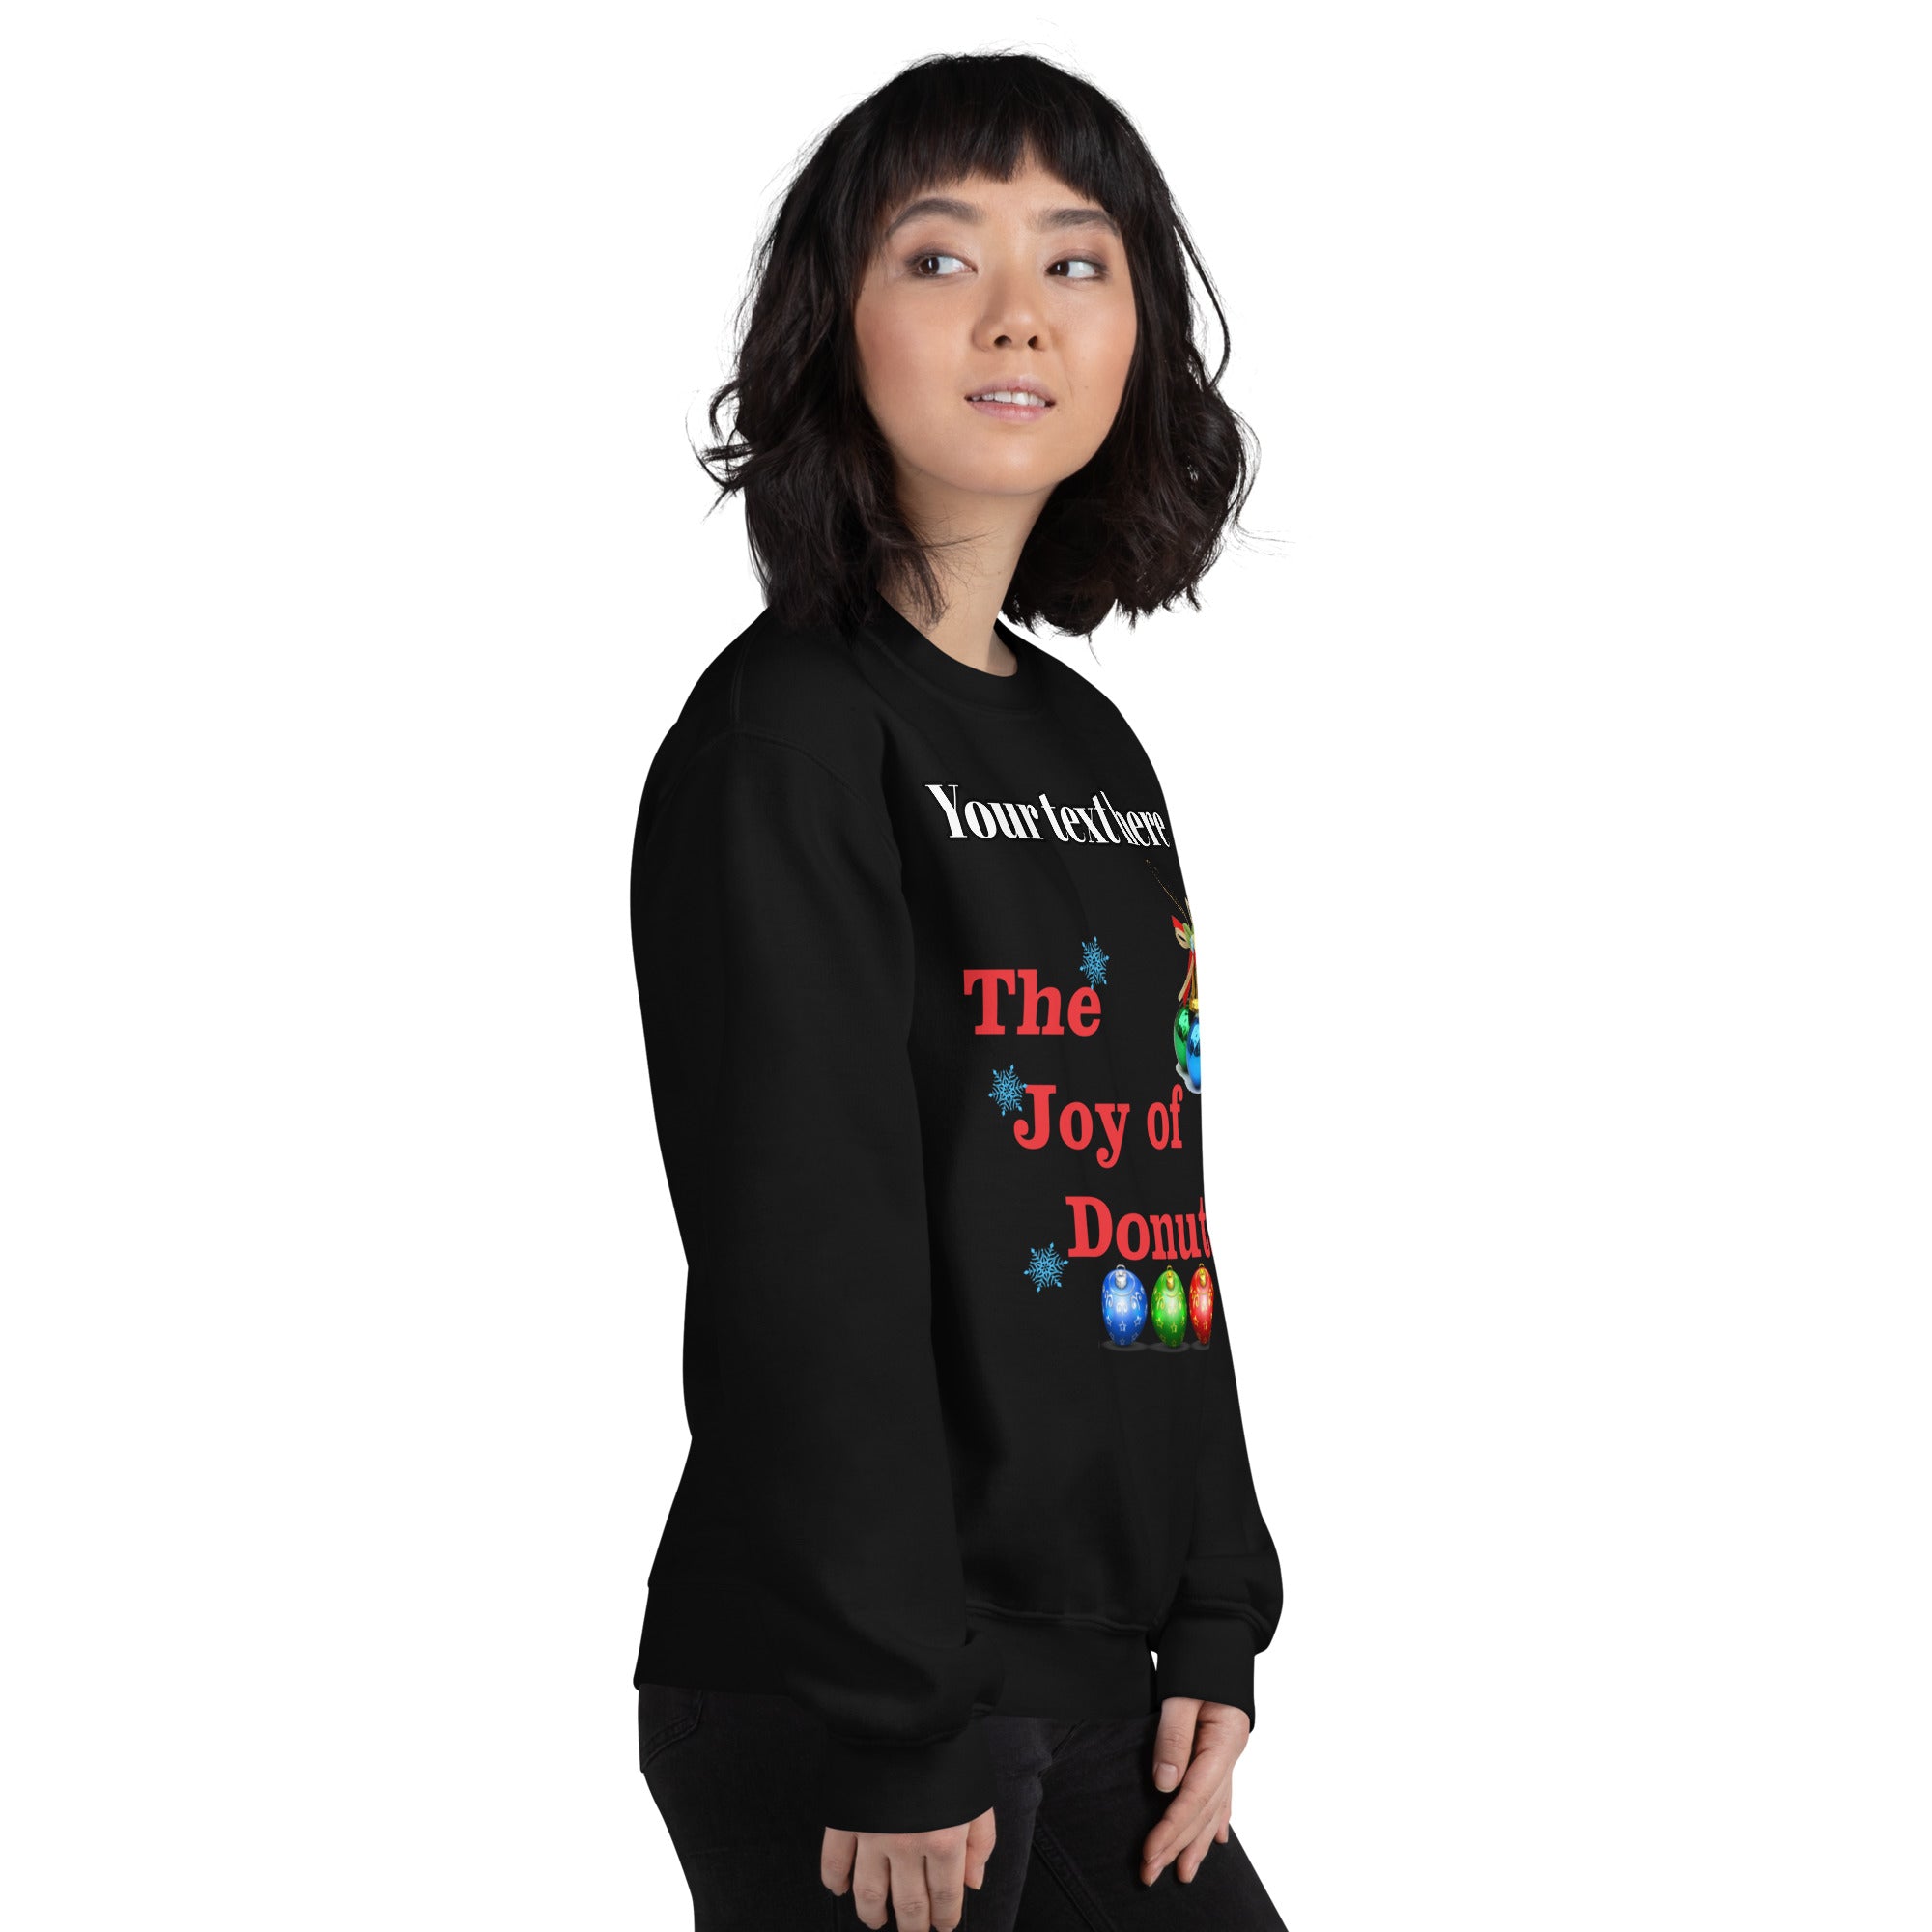 Personalized Women's Premium Sweatshirt